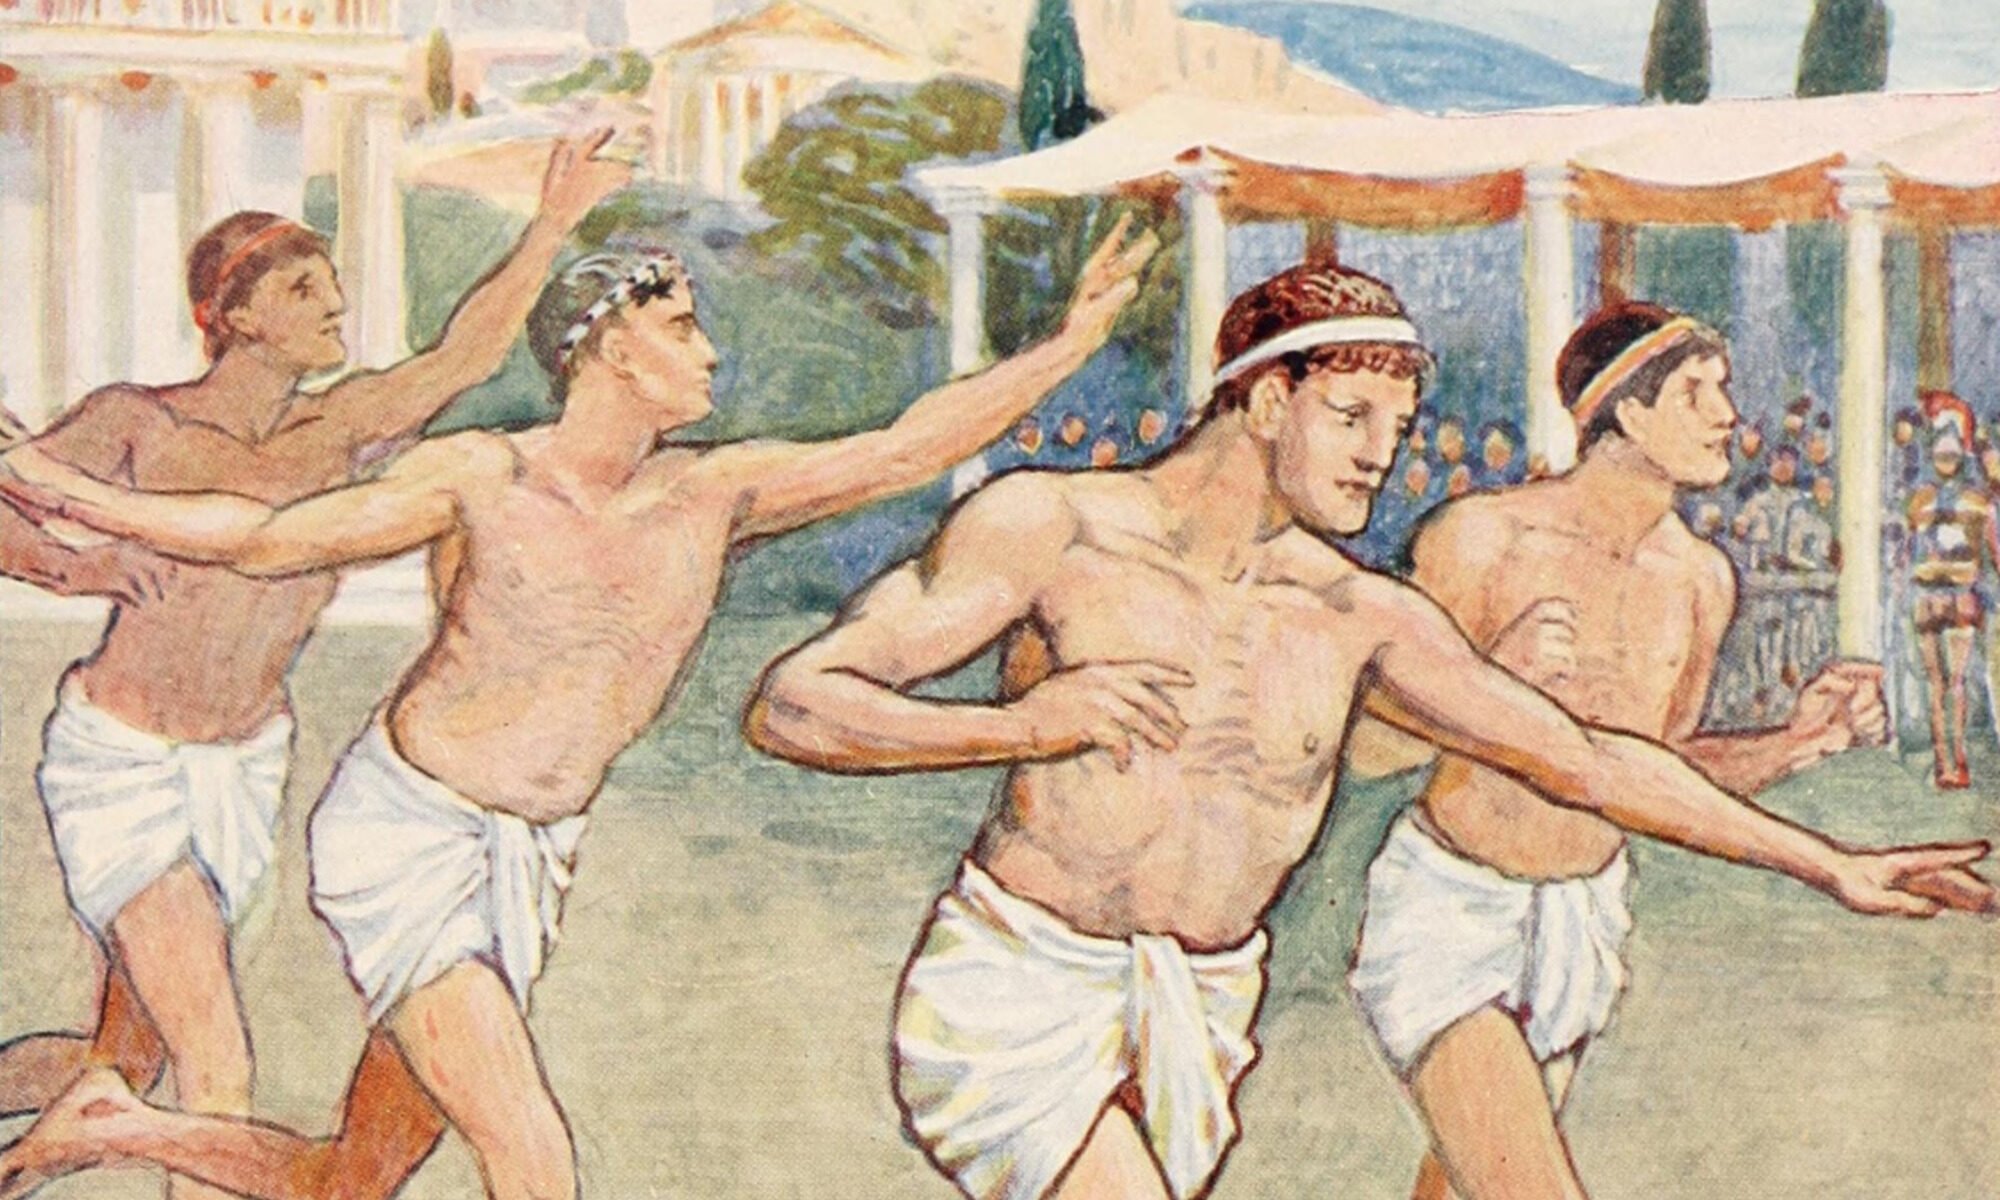 Bieg w starożytnej Grecji. Ilustracja Waltera Crane'a do książki The Story of Greece Told to Boys and Girls Mary MacGregor (1914).